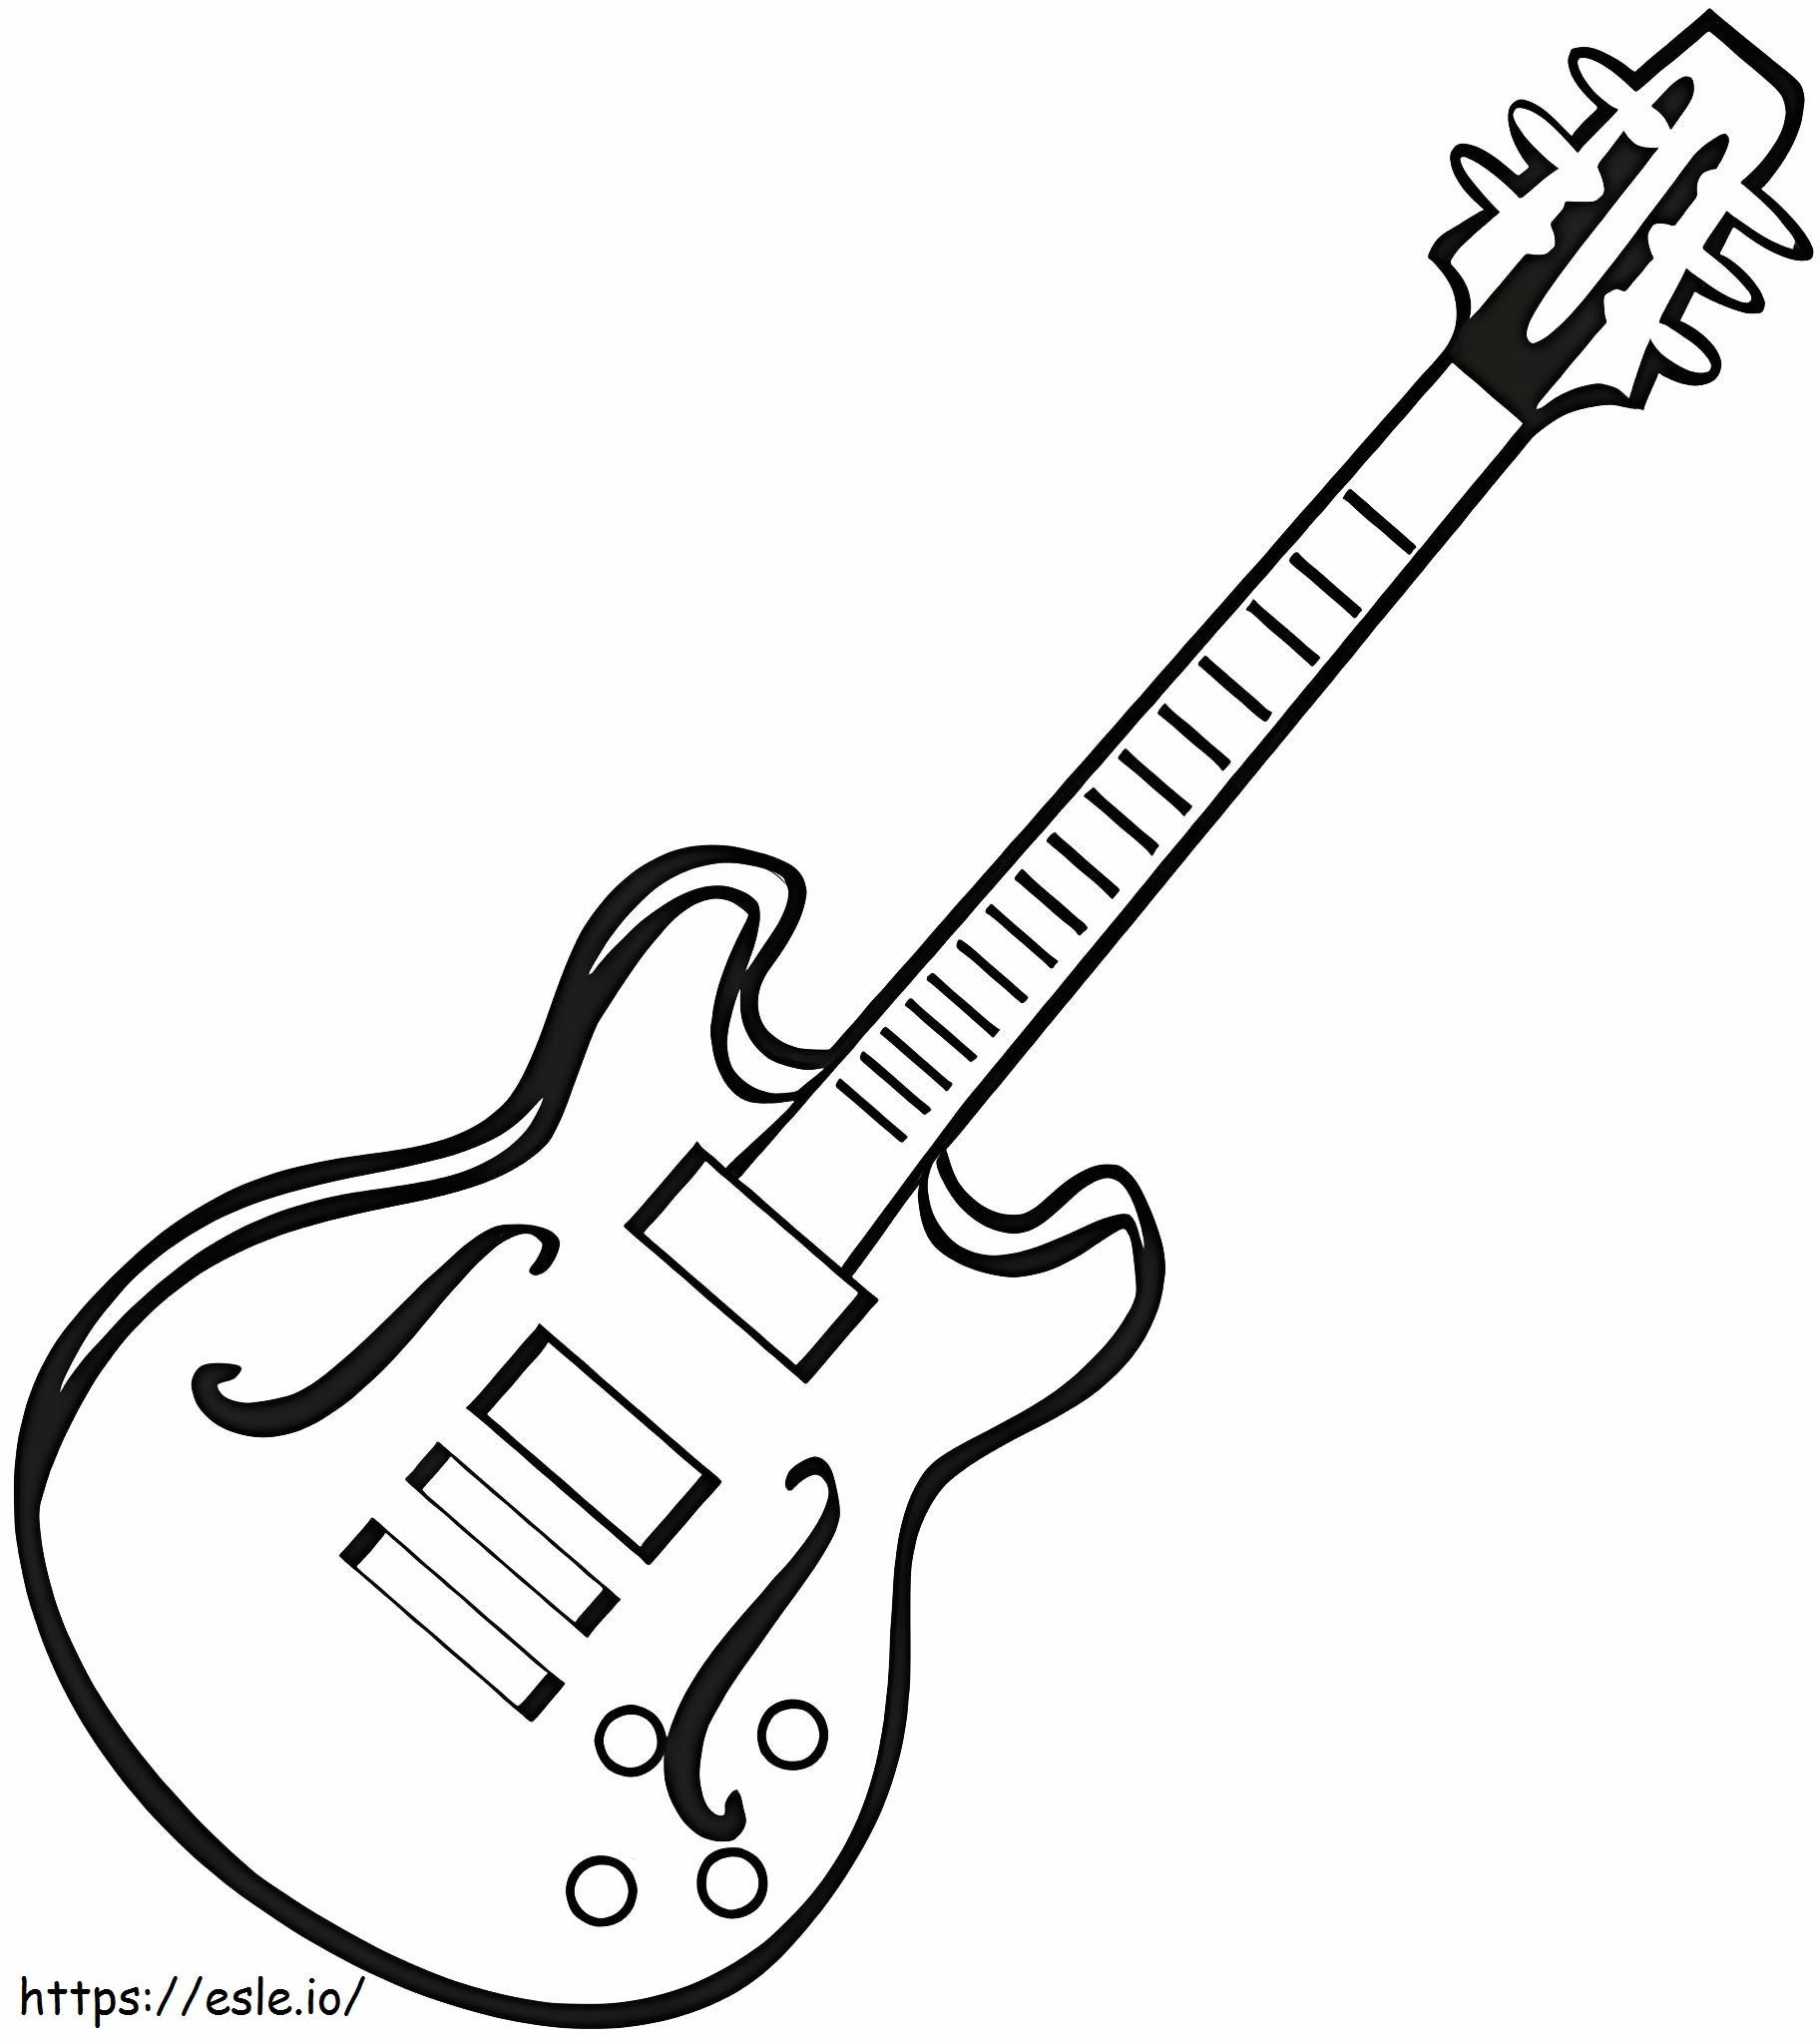 Coloriage Guitare électrique gratuite à imprimer dessin